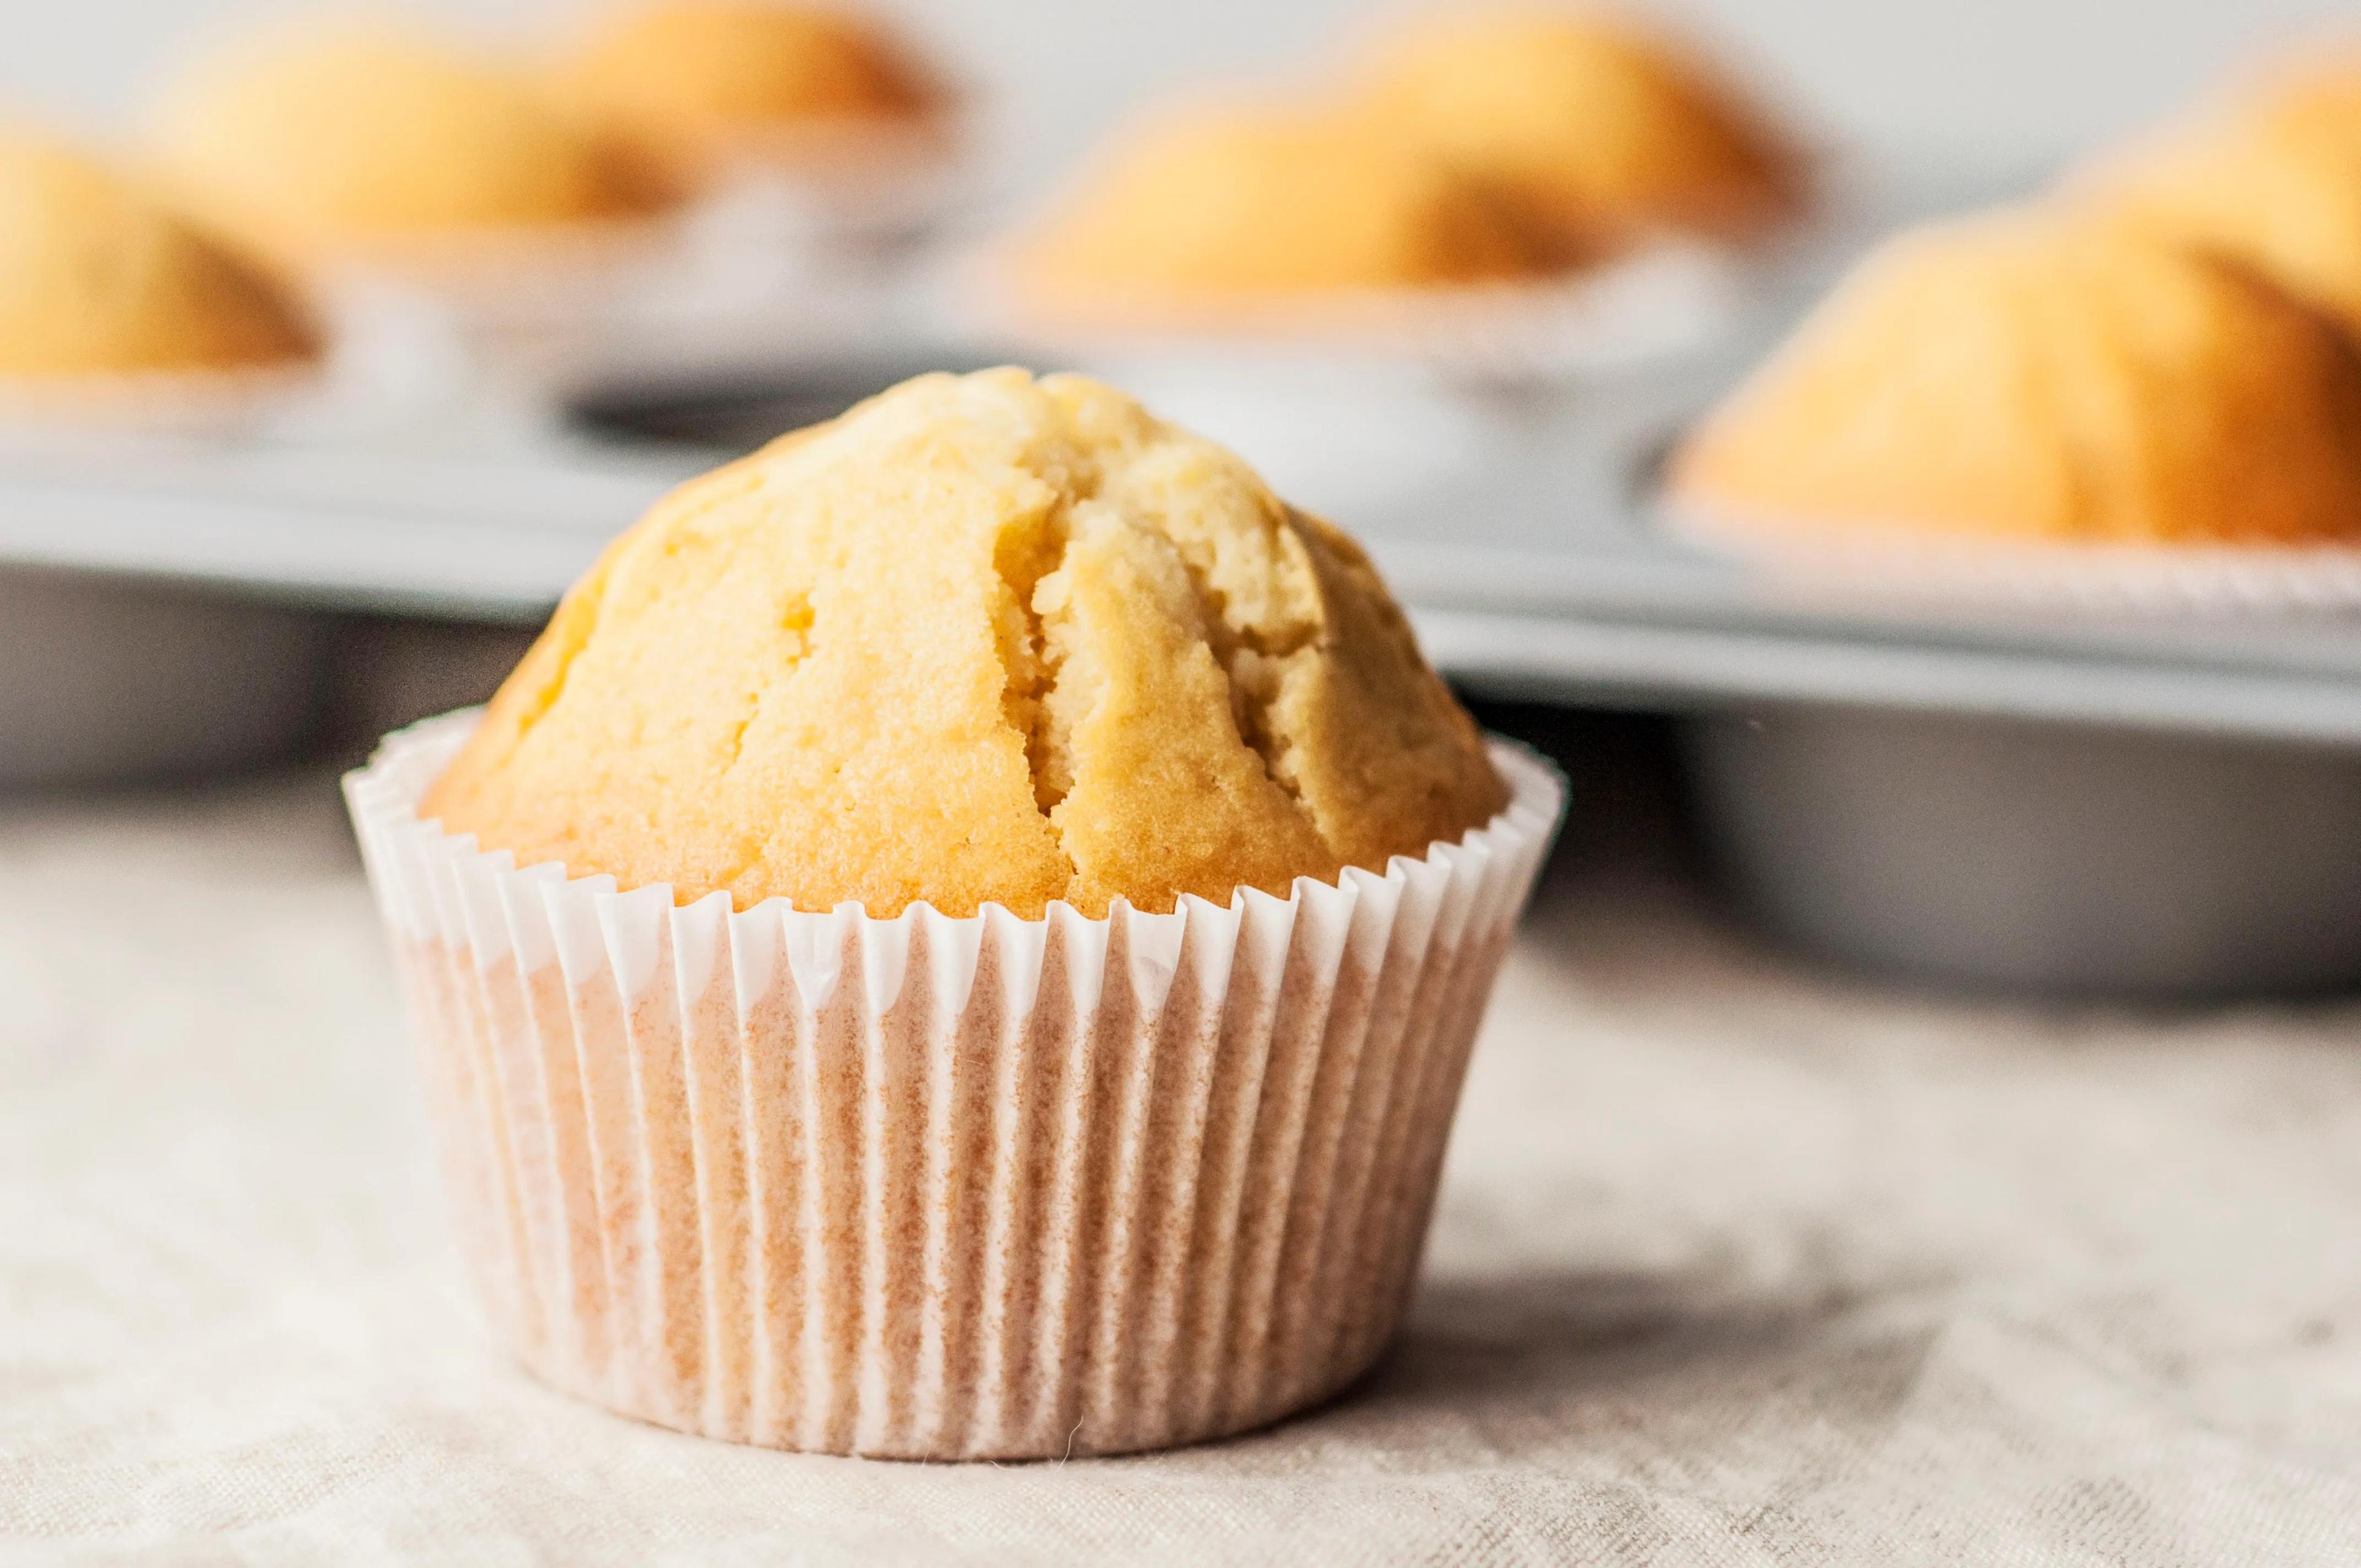 Top 17 Best Muffin Recipes